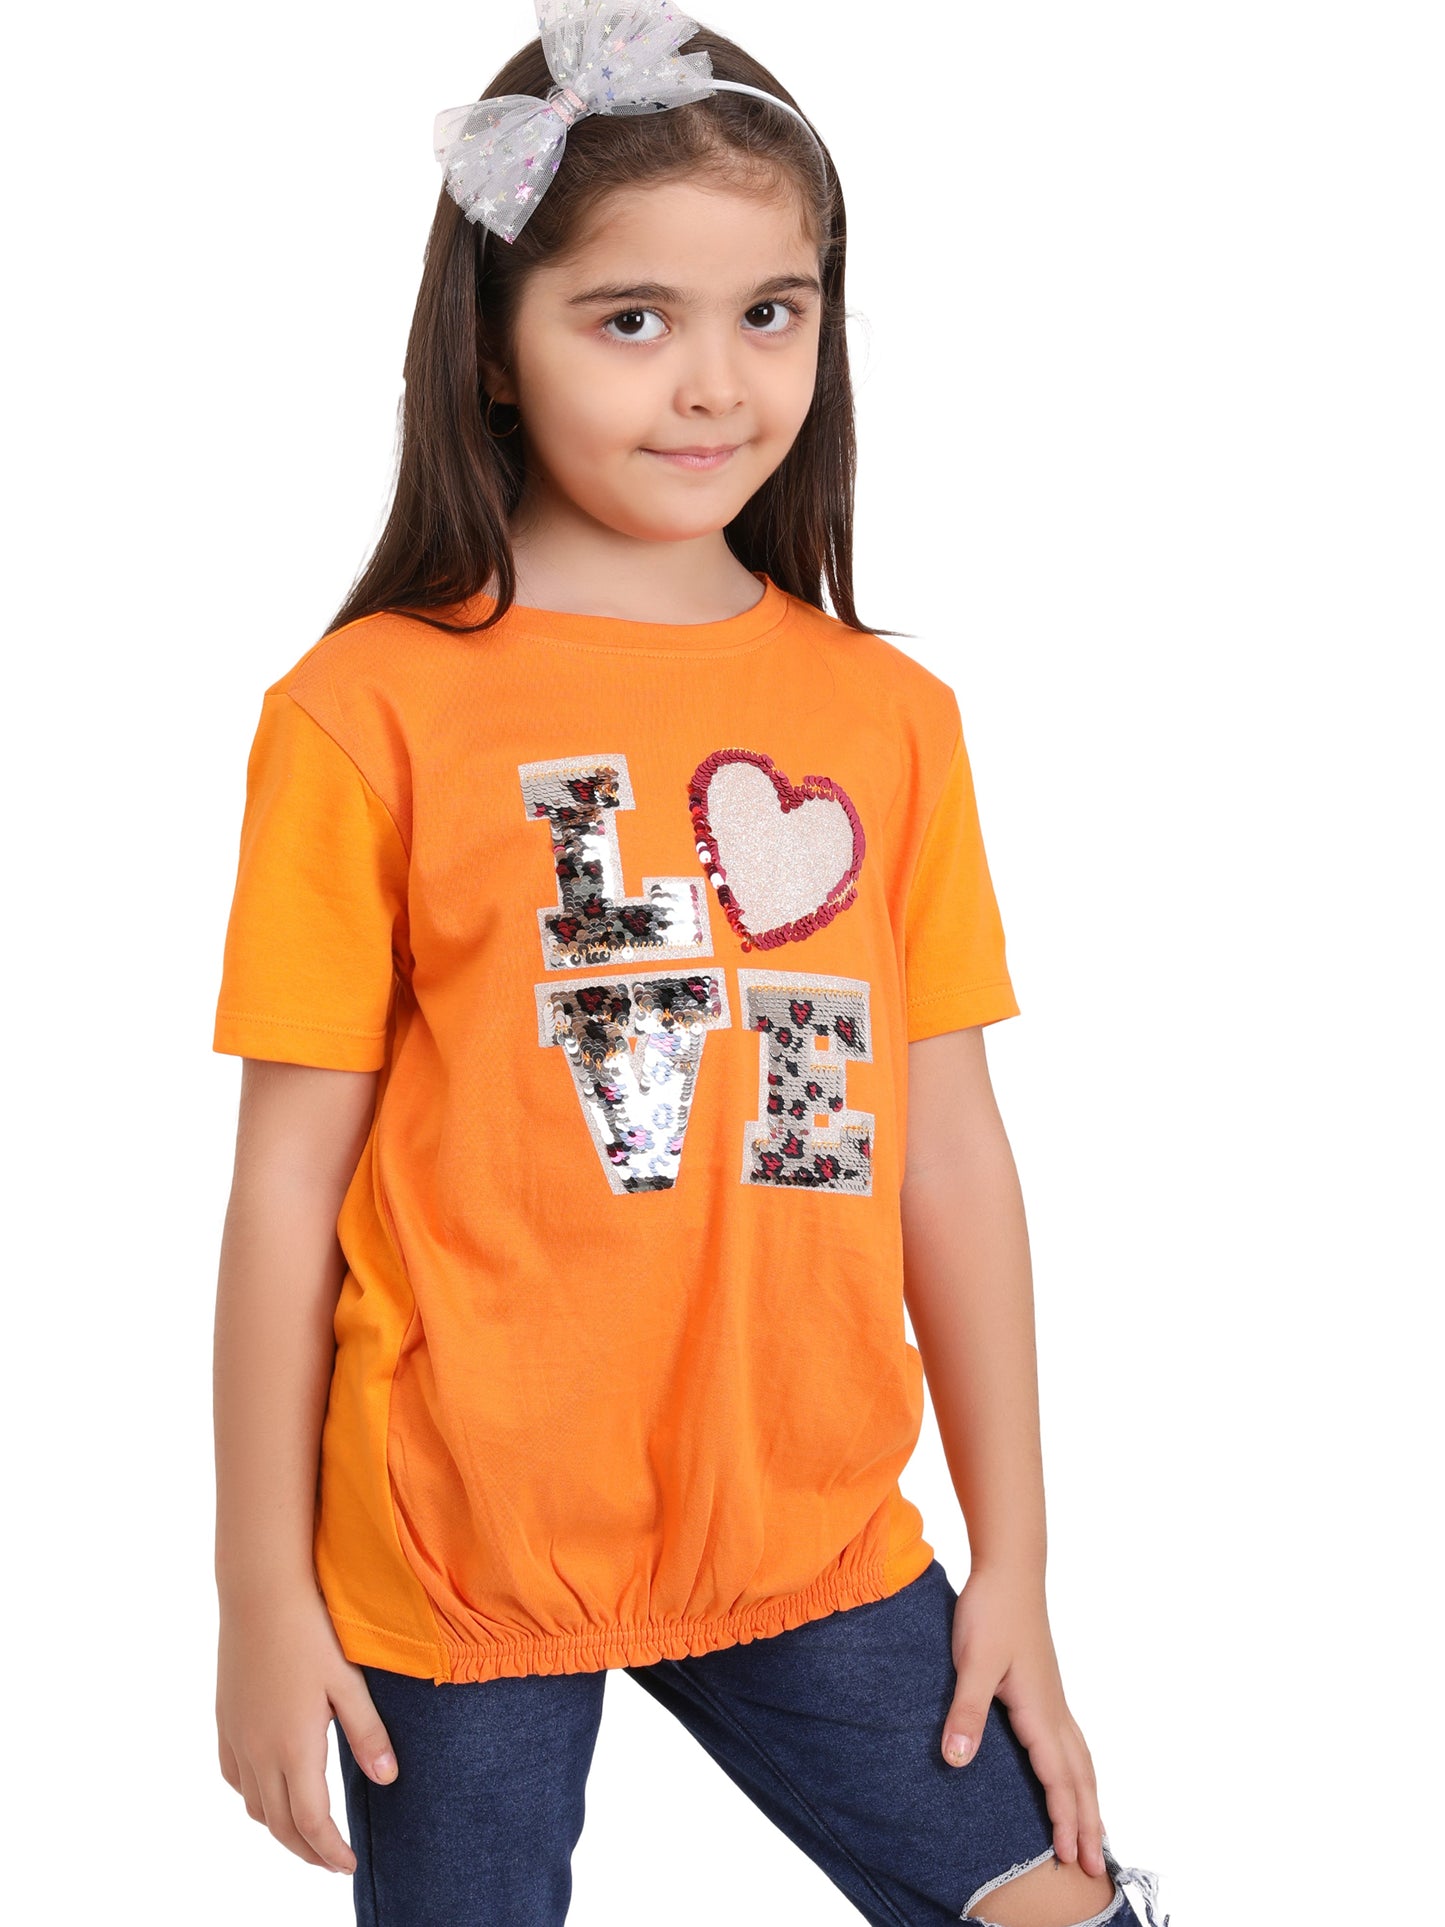 Lovely Girls T-Shirt - Orange